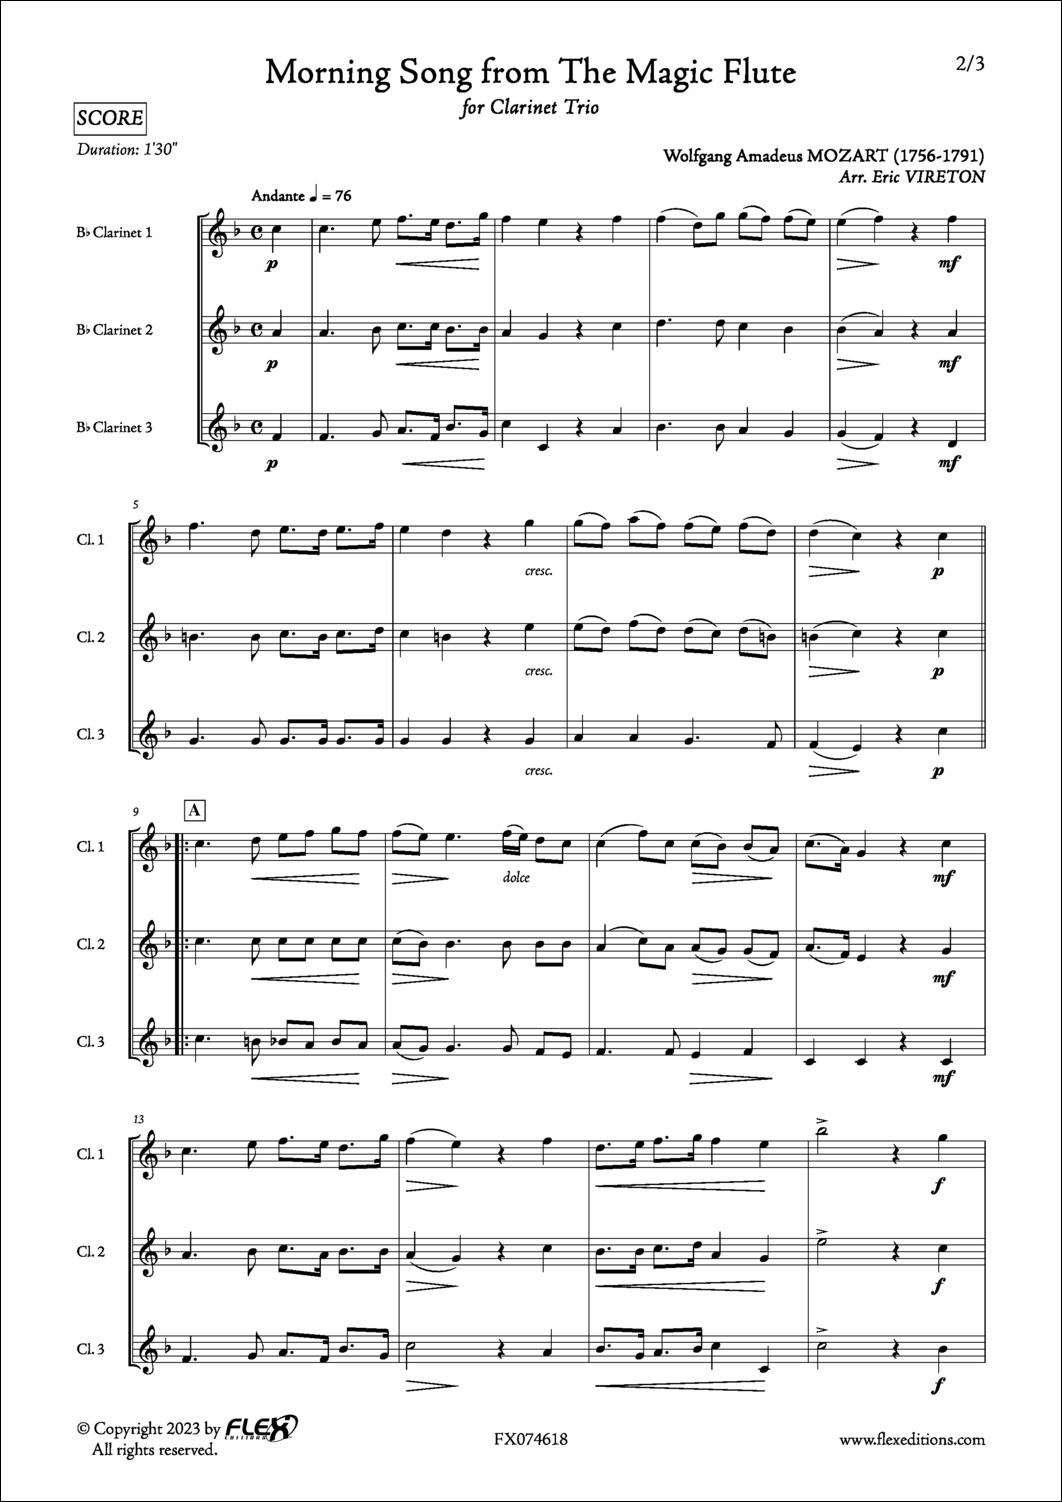 Chanson du Matin extrait de La Flûte Enchantée - W. A. MOZART - <font color=#666666>Trio de Clarinettes</font>